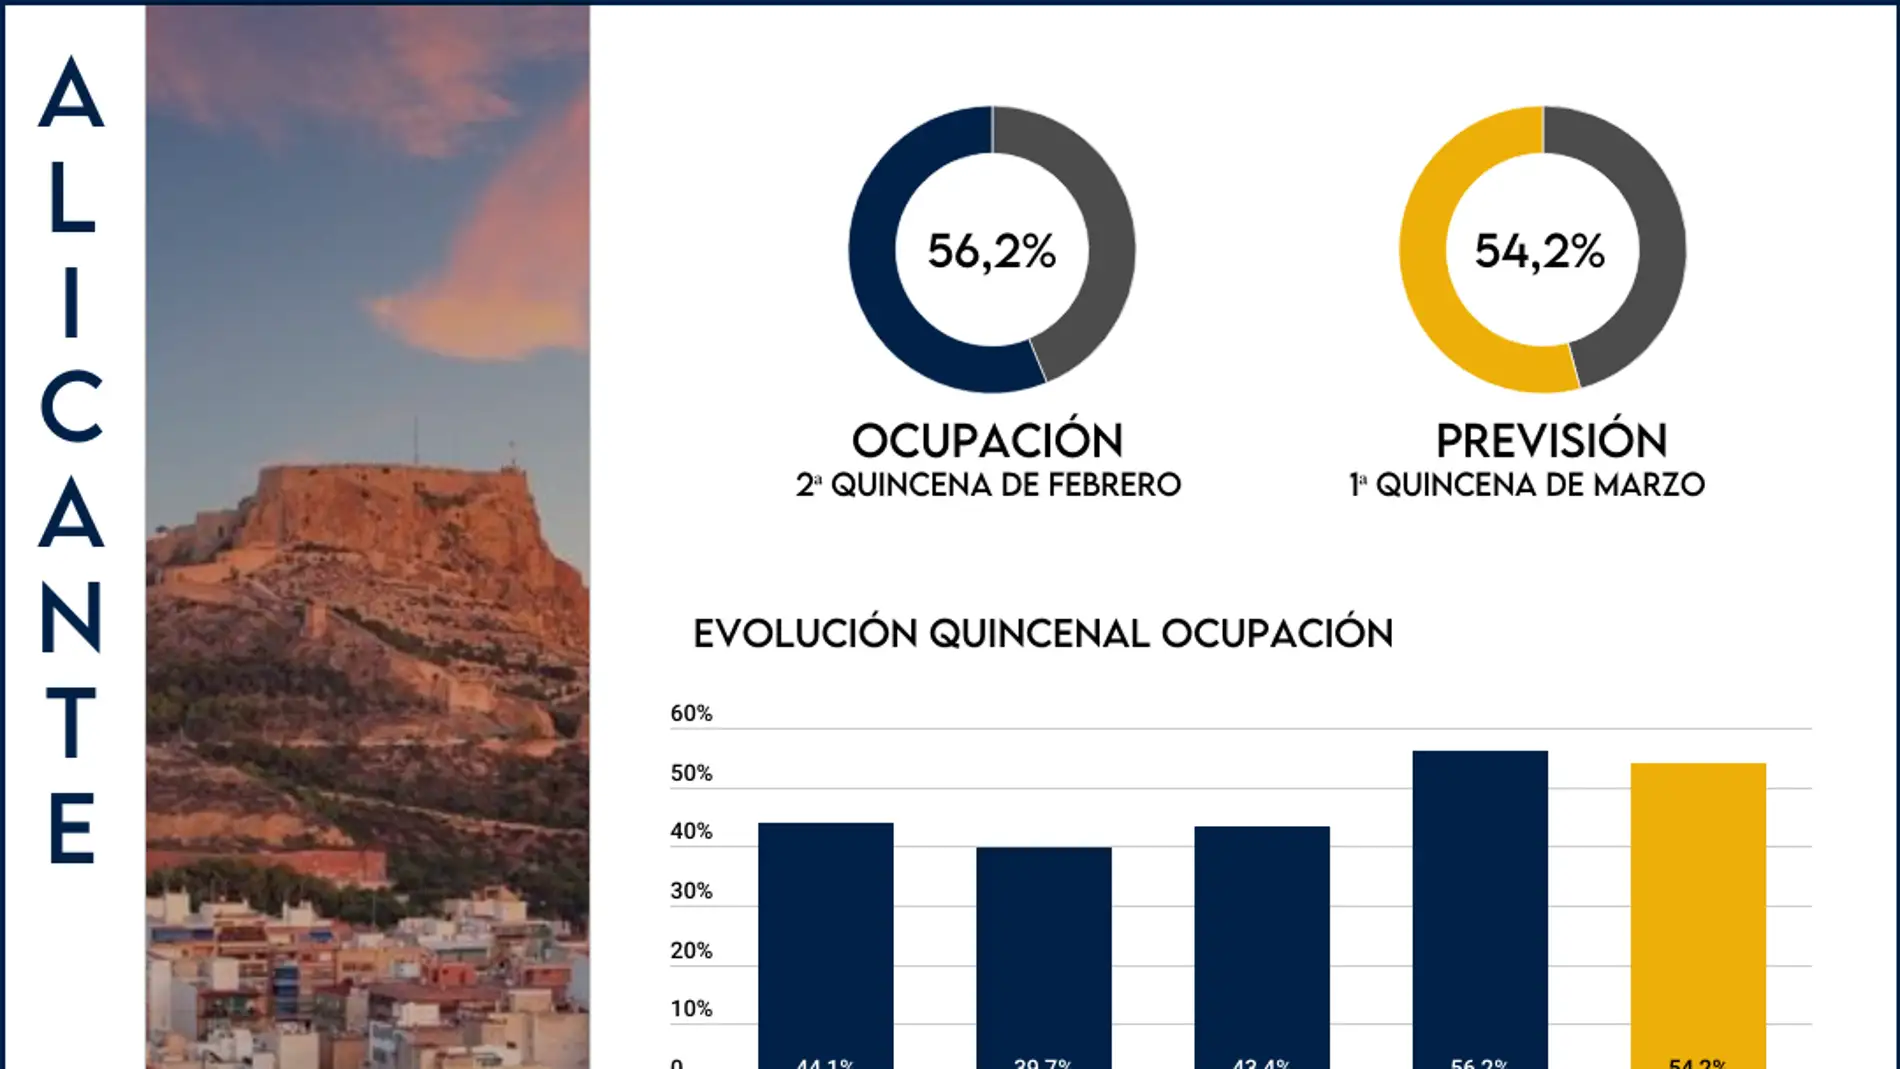 La provincia de Alicante supera el 70% de ocupación media en febrero